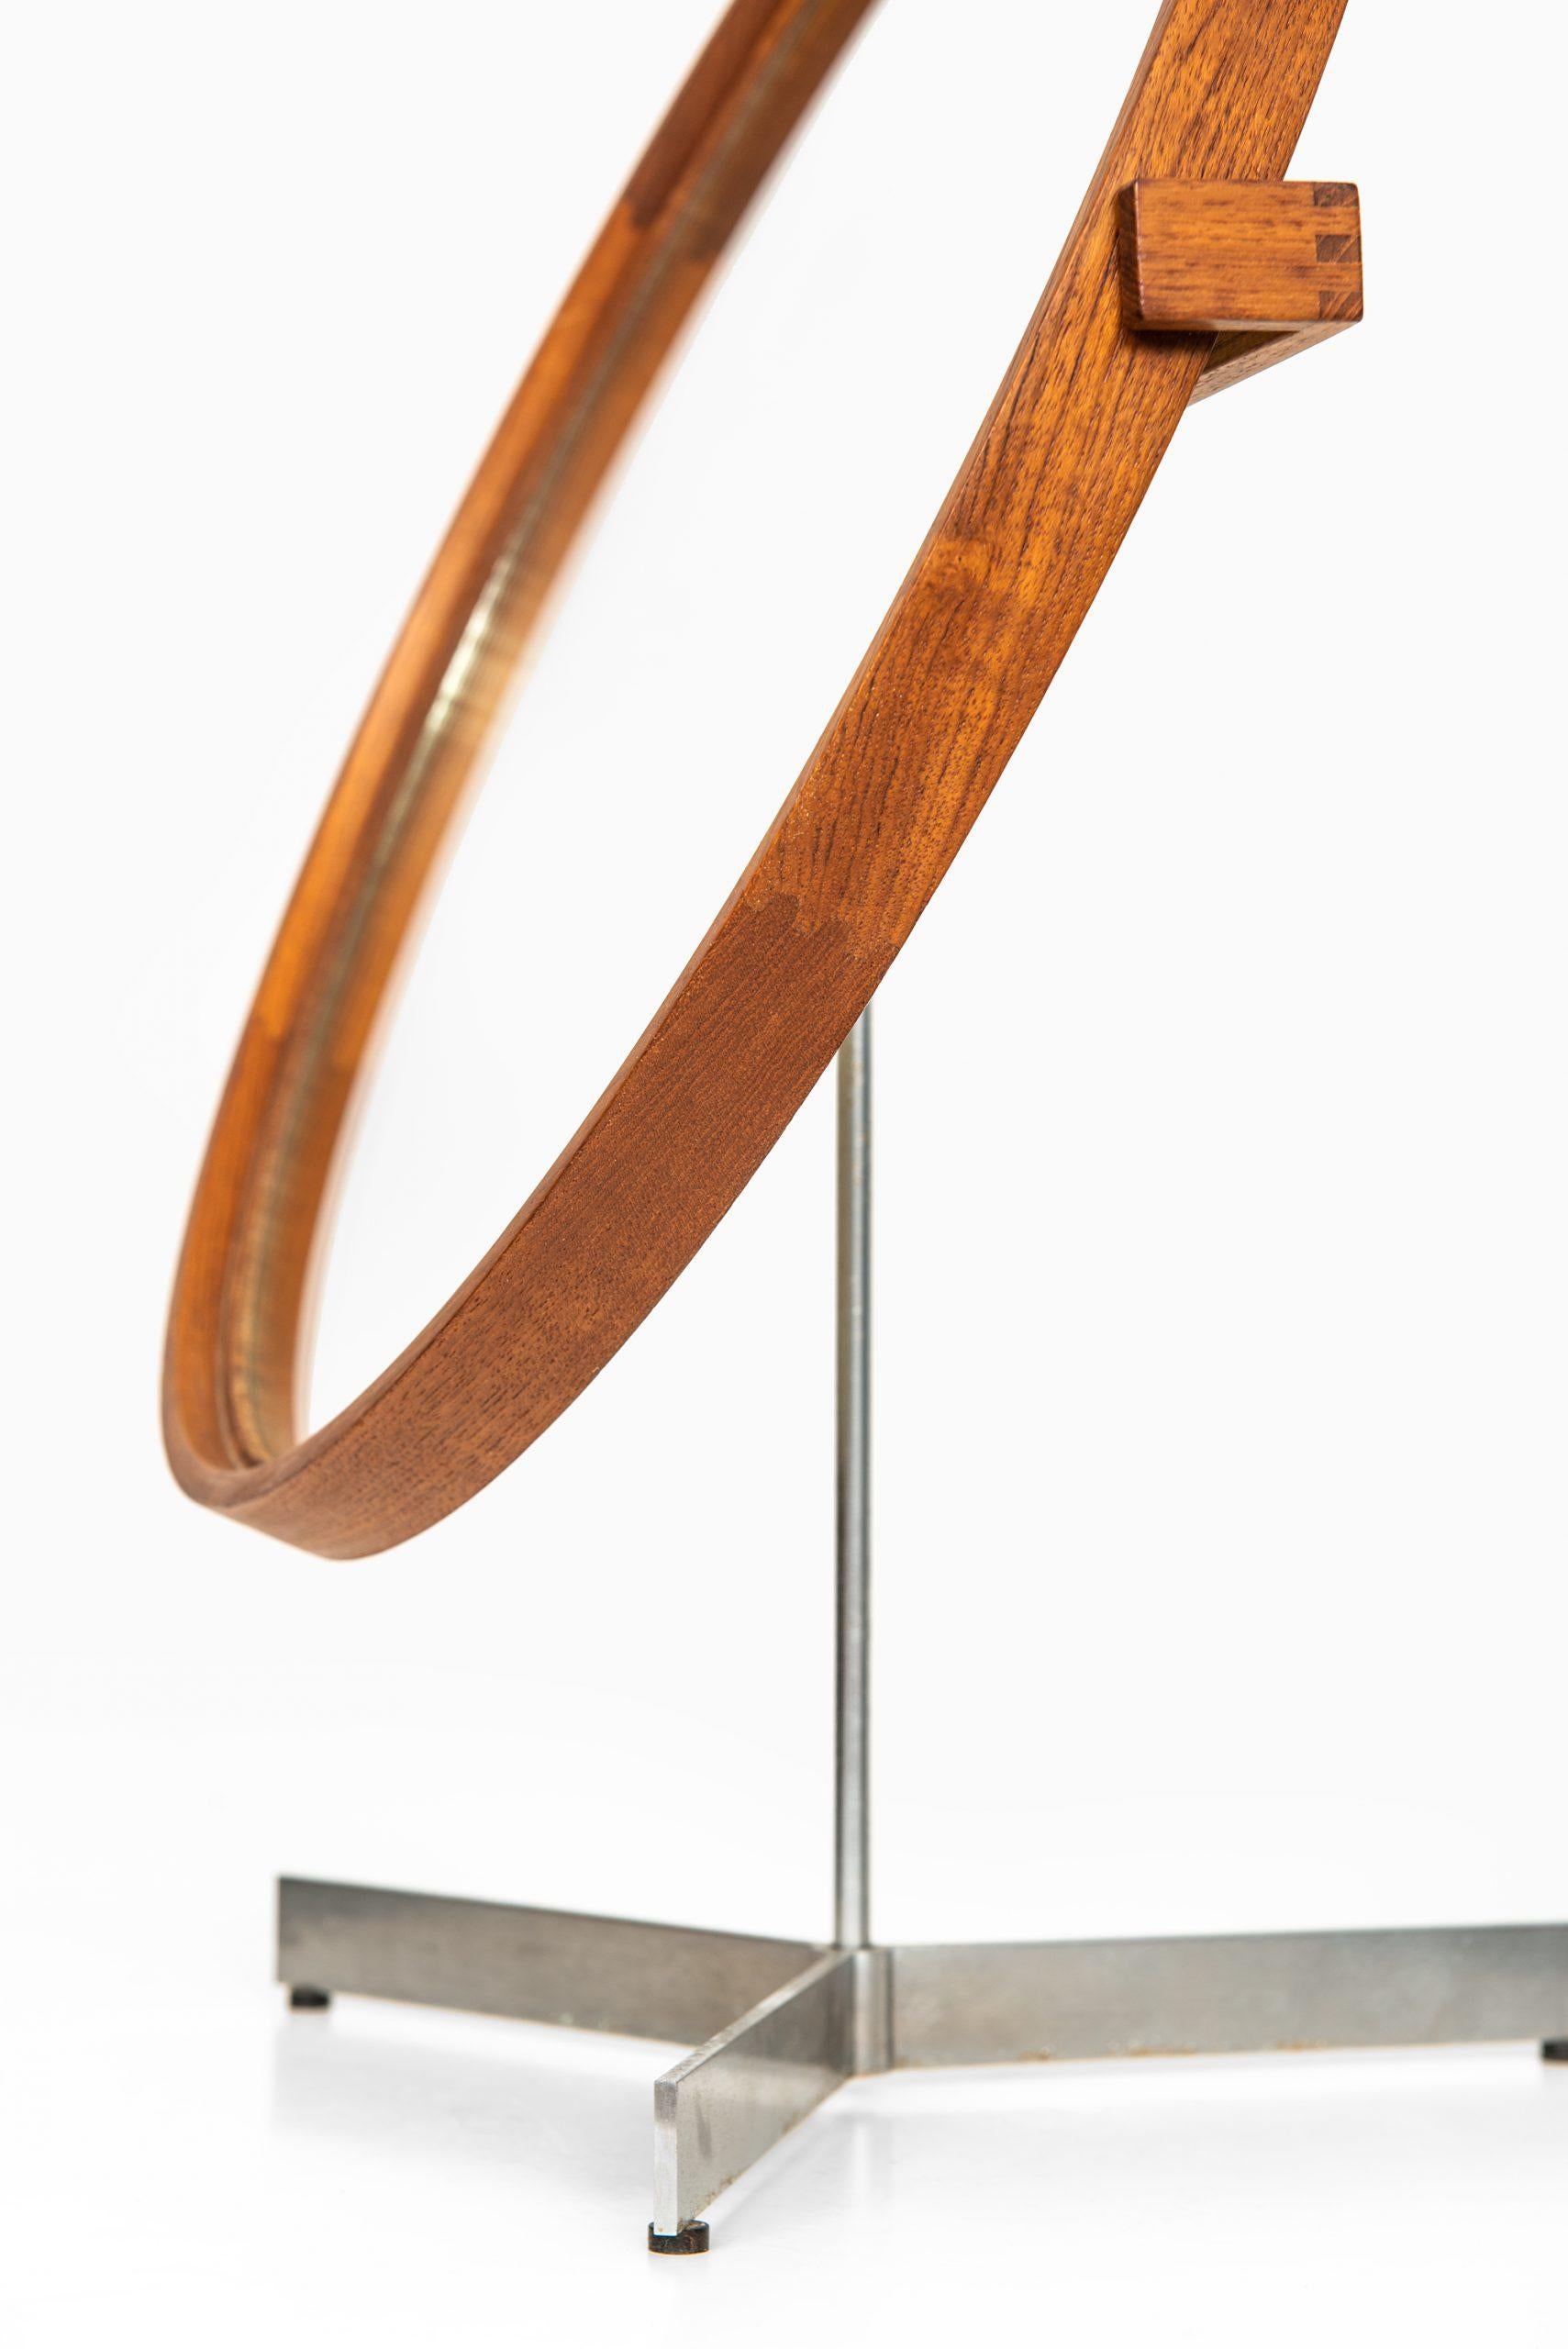 Seltener Tischspiegel, entworfen von Uno & Östen Kristiansson. Produziert von Luxus in Vittsjö, Schweden.